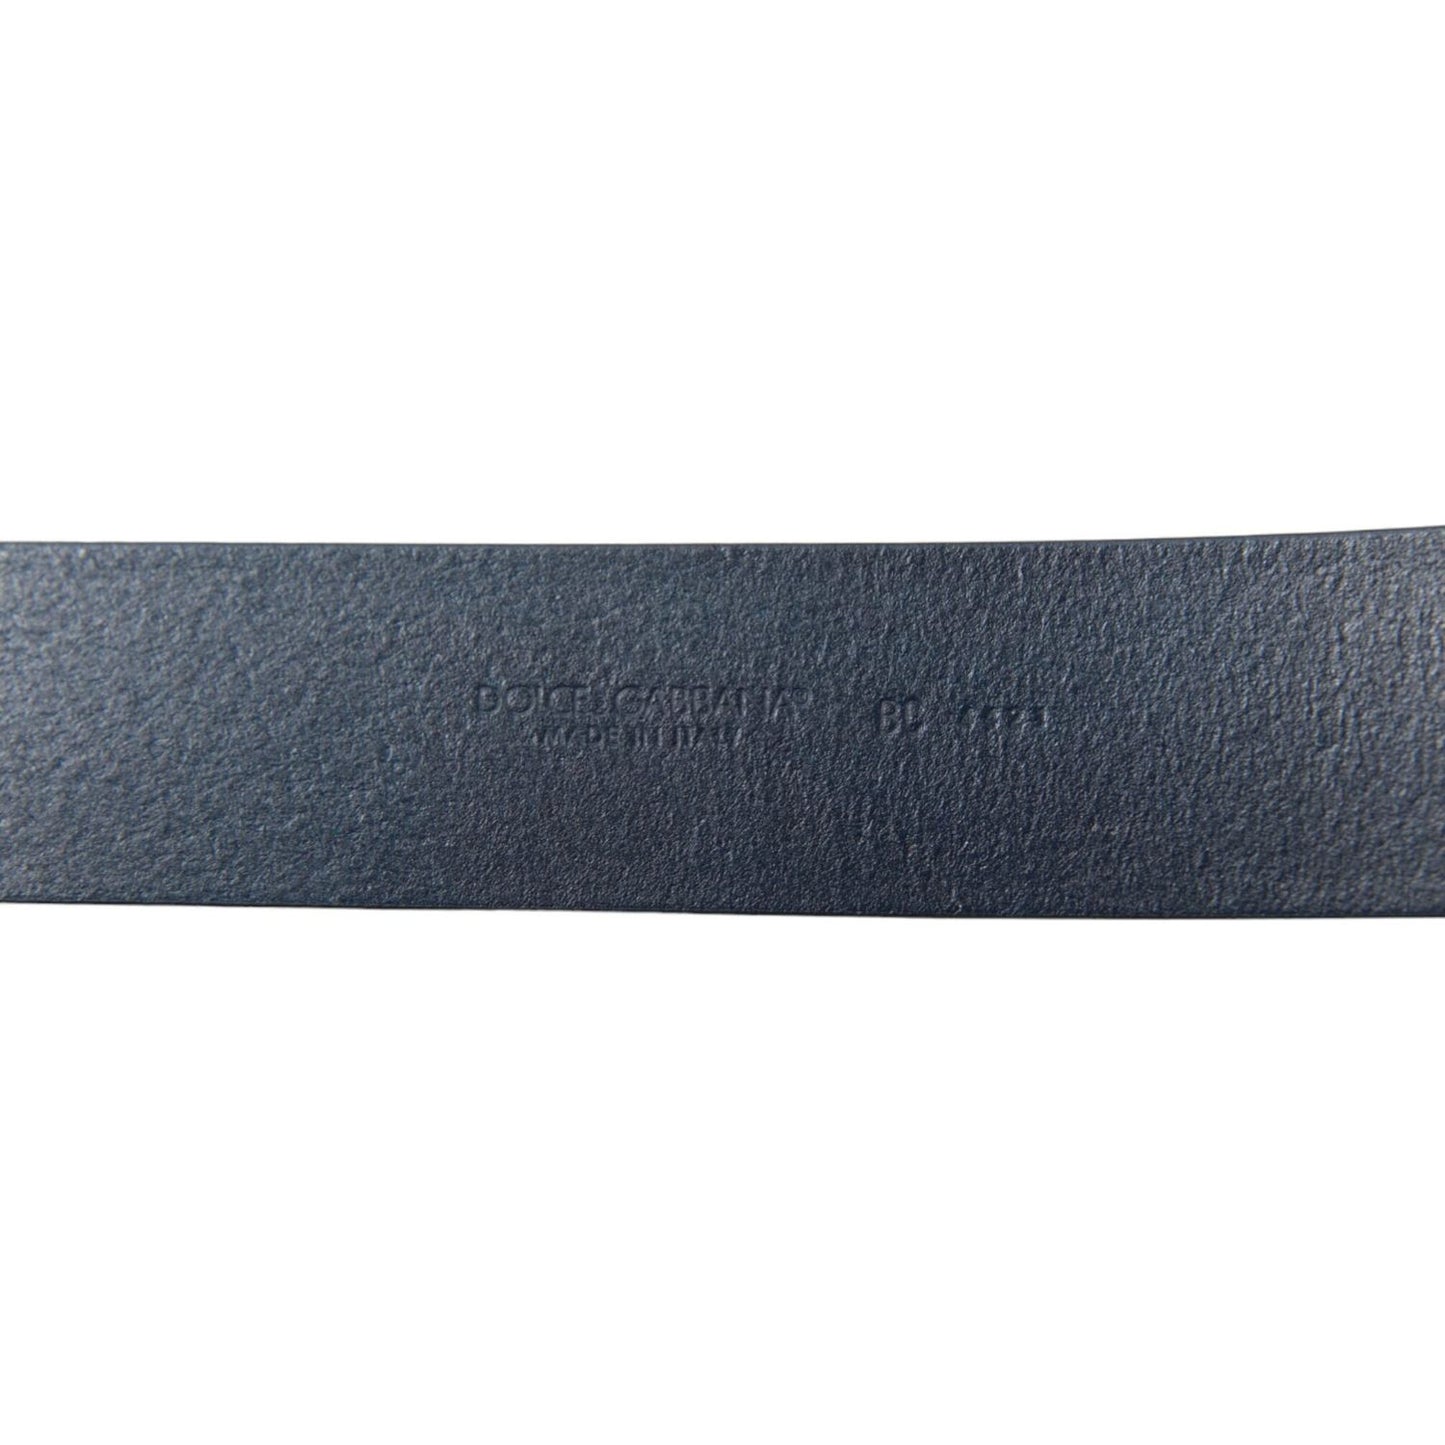 Dolce & Gabbana | Elegant Blue Calf Leather Belt with Metal Buckle| McRichard Designer Brands   